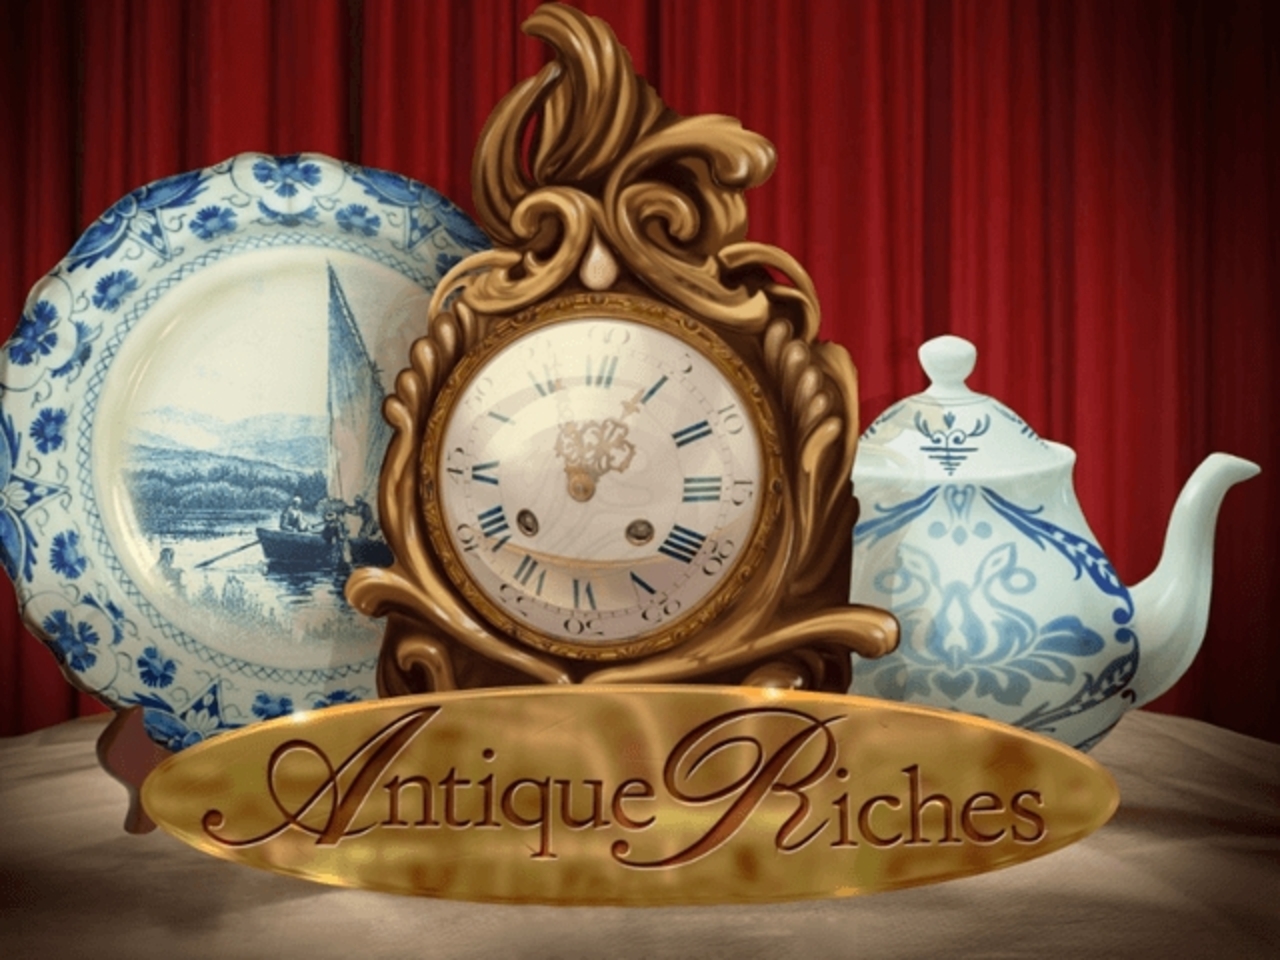 Antique Riches